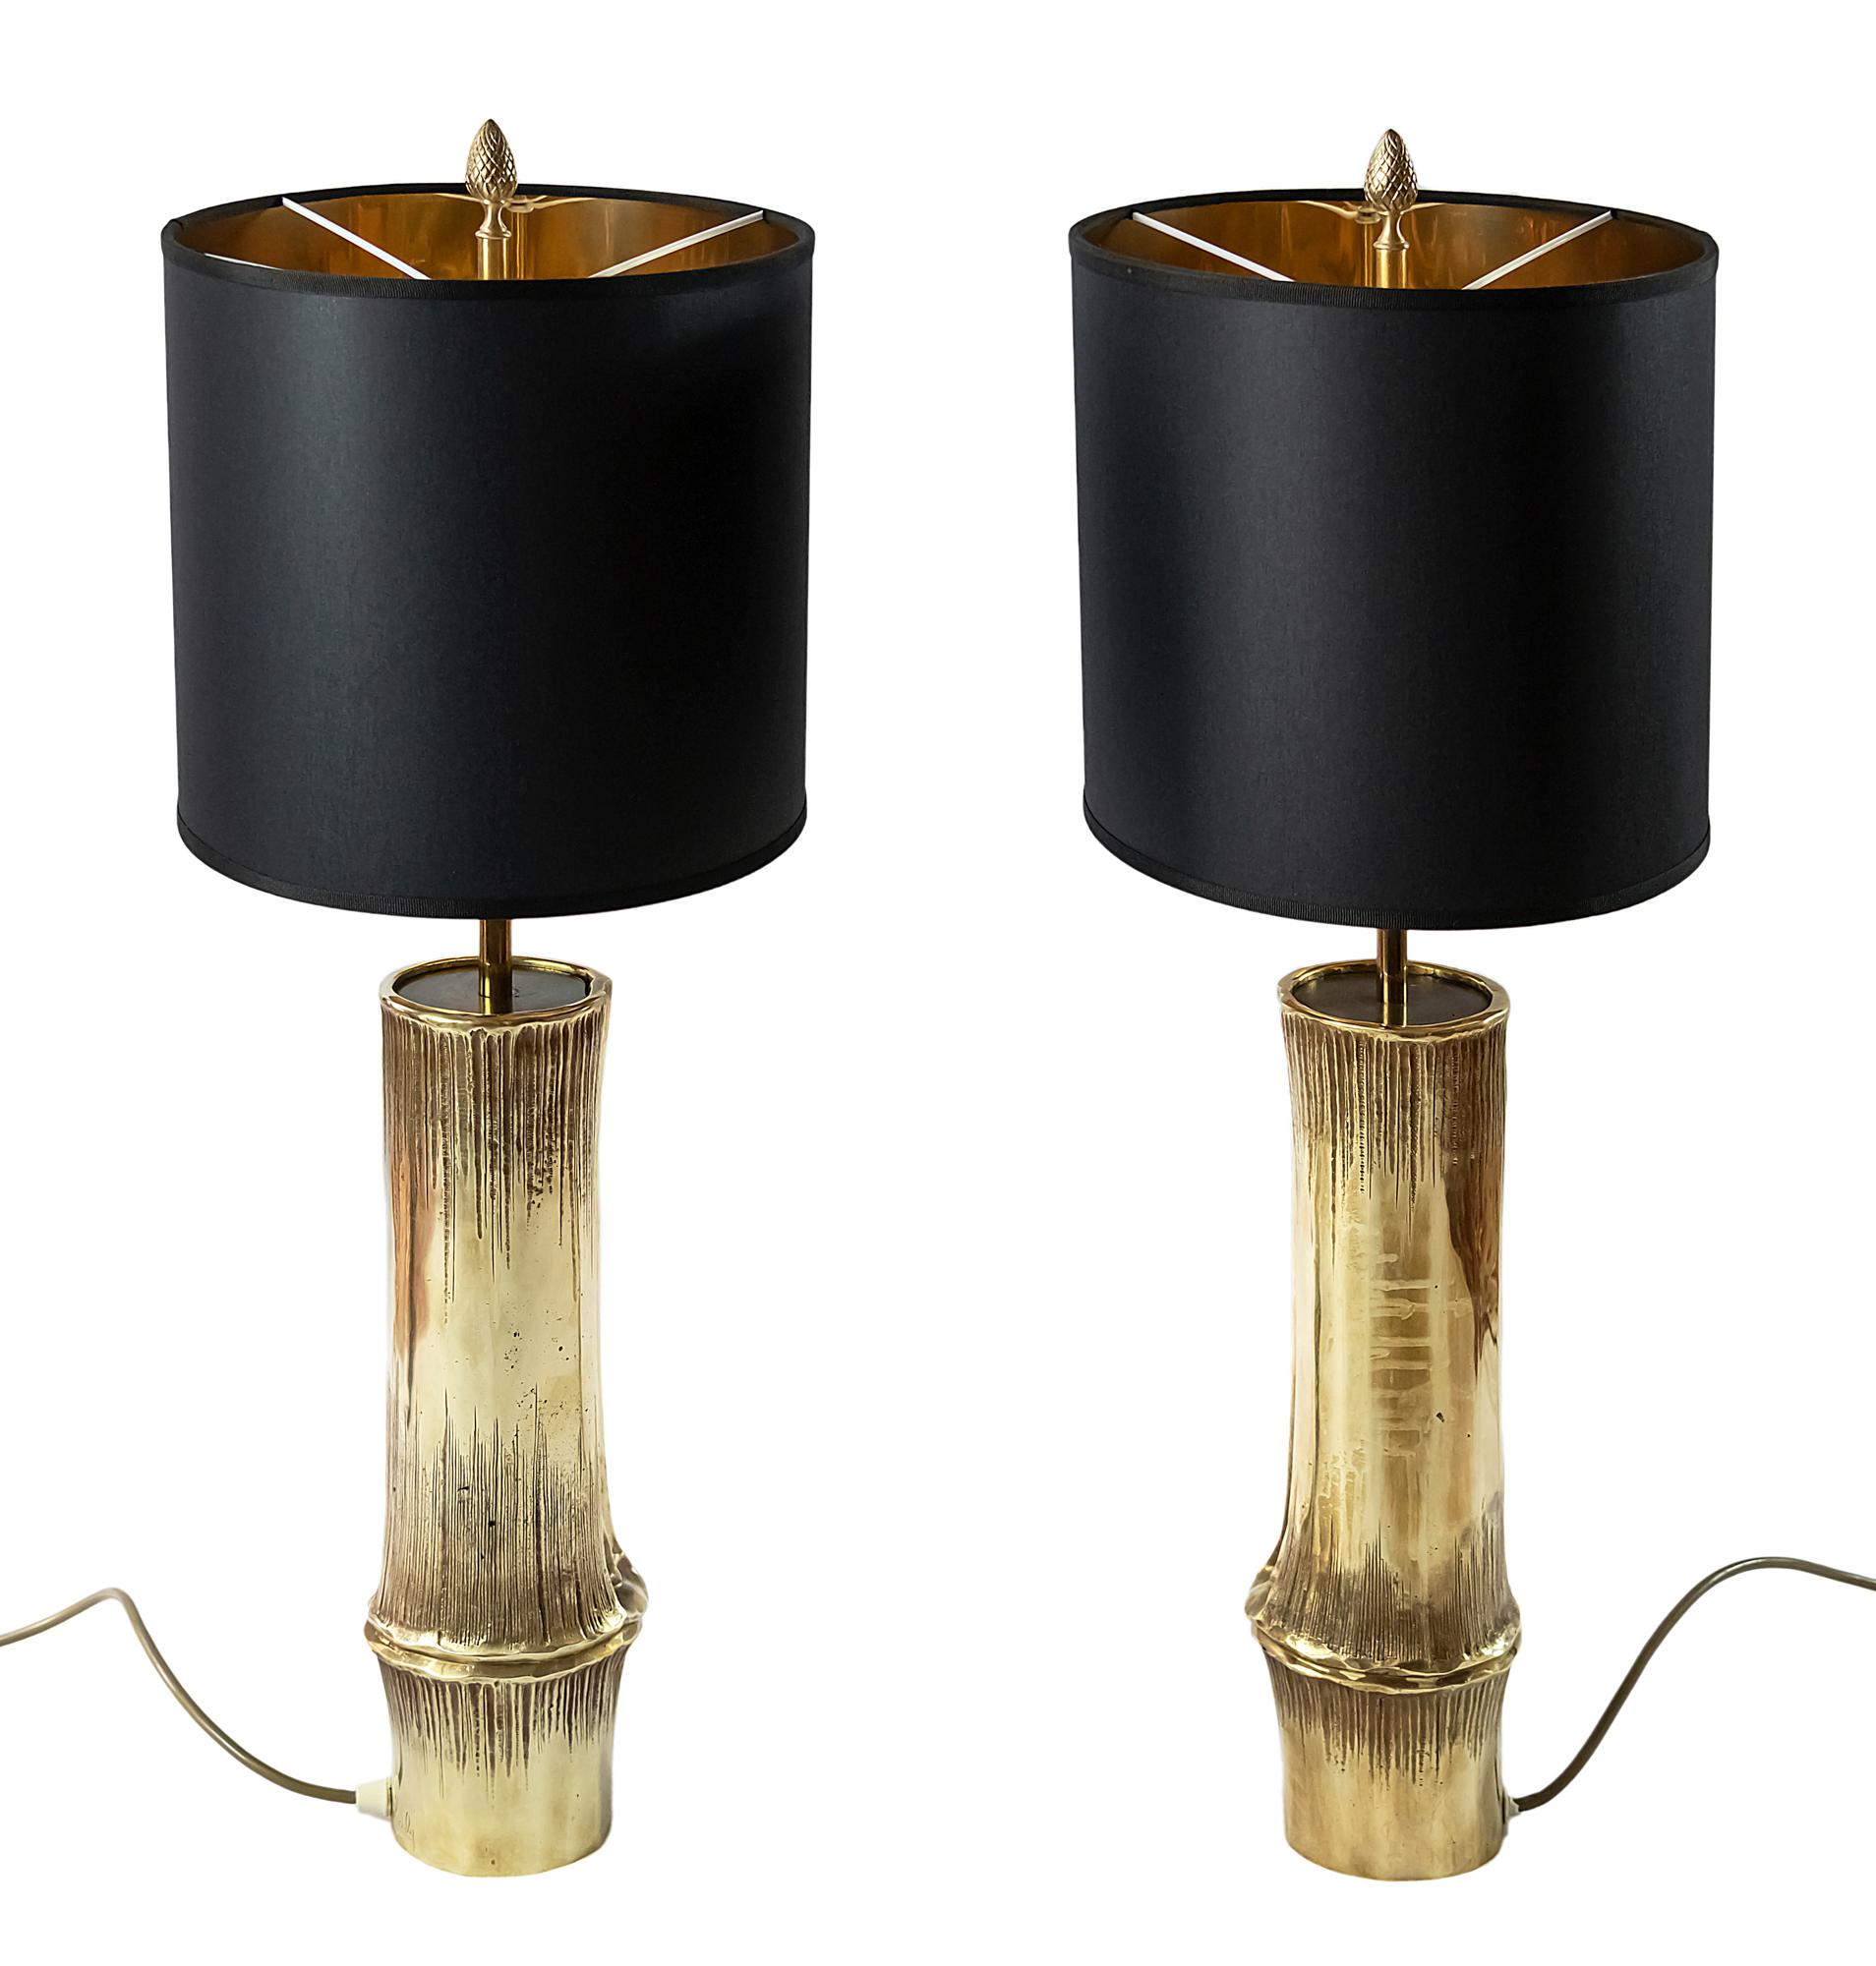 Paire de lampes de table vintage en bronze en forme de bambou de la Maison Charles.
Les abat-jour sont de forme ovale, de fabrication récente.
Chanté sur le côté.
Chaque lampe de table comprend 3 ampoules E27.
Chaque lampe pèse 7,4 kg.
 